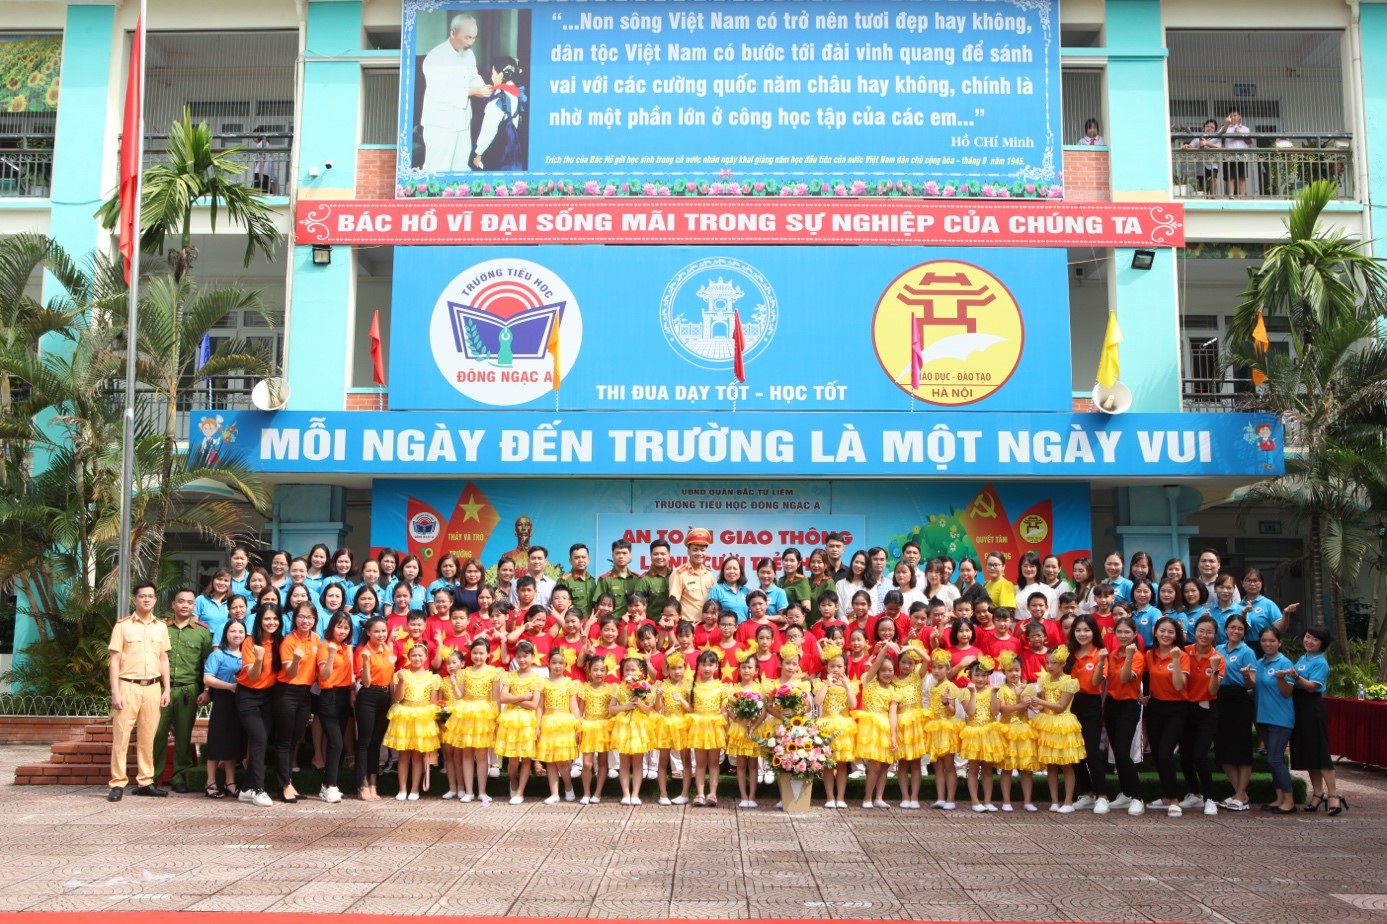 Ban Tổ chức chụp hình lưu niệm cùng Ban Giám hiệu và các em học sinh trường Tiểu học Đông Ngạc A, Hà Nội